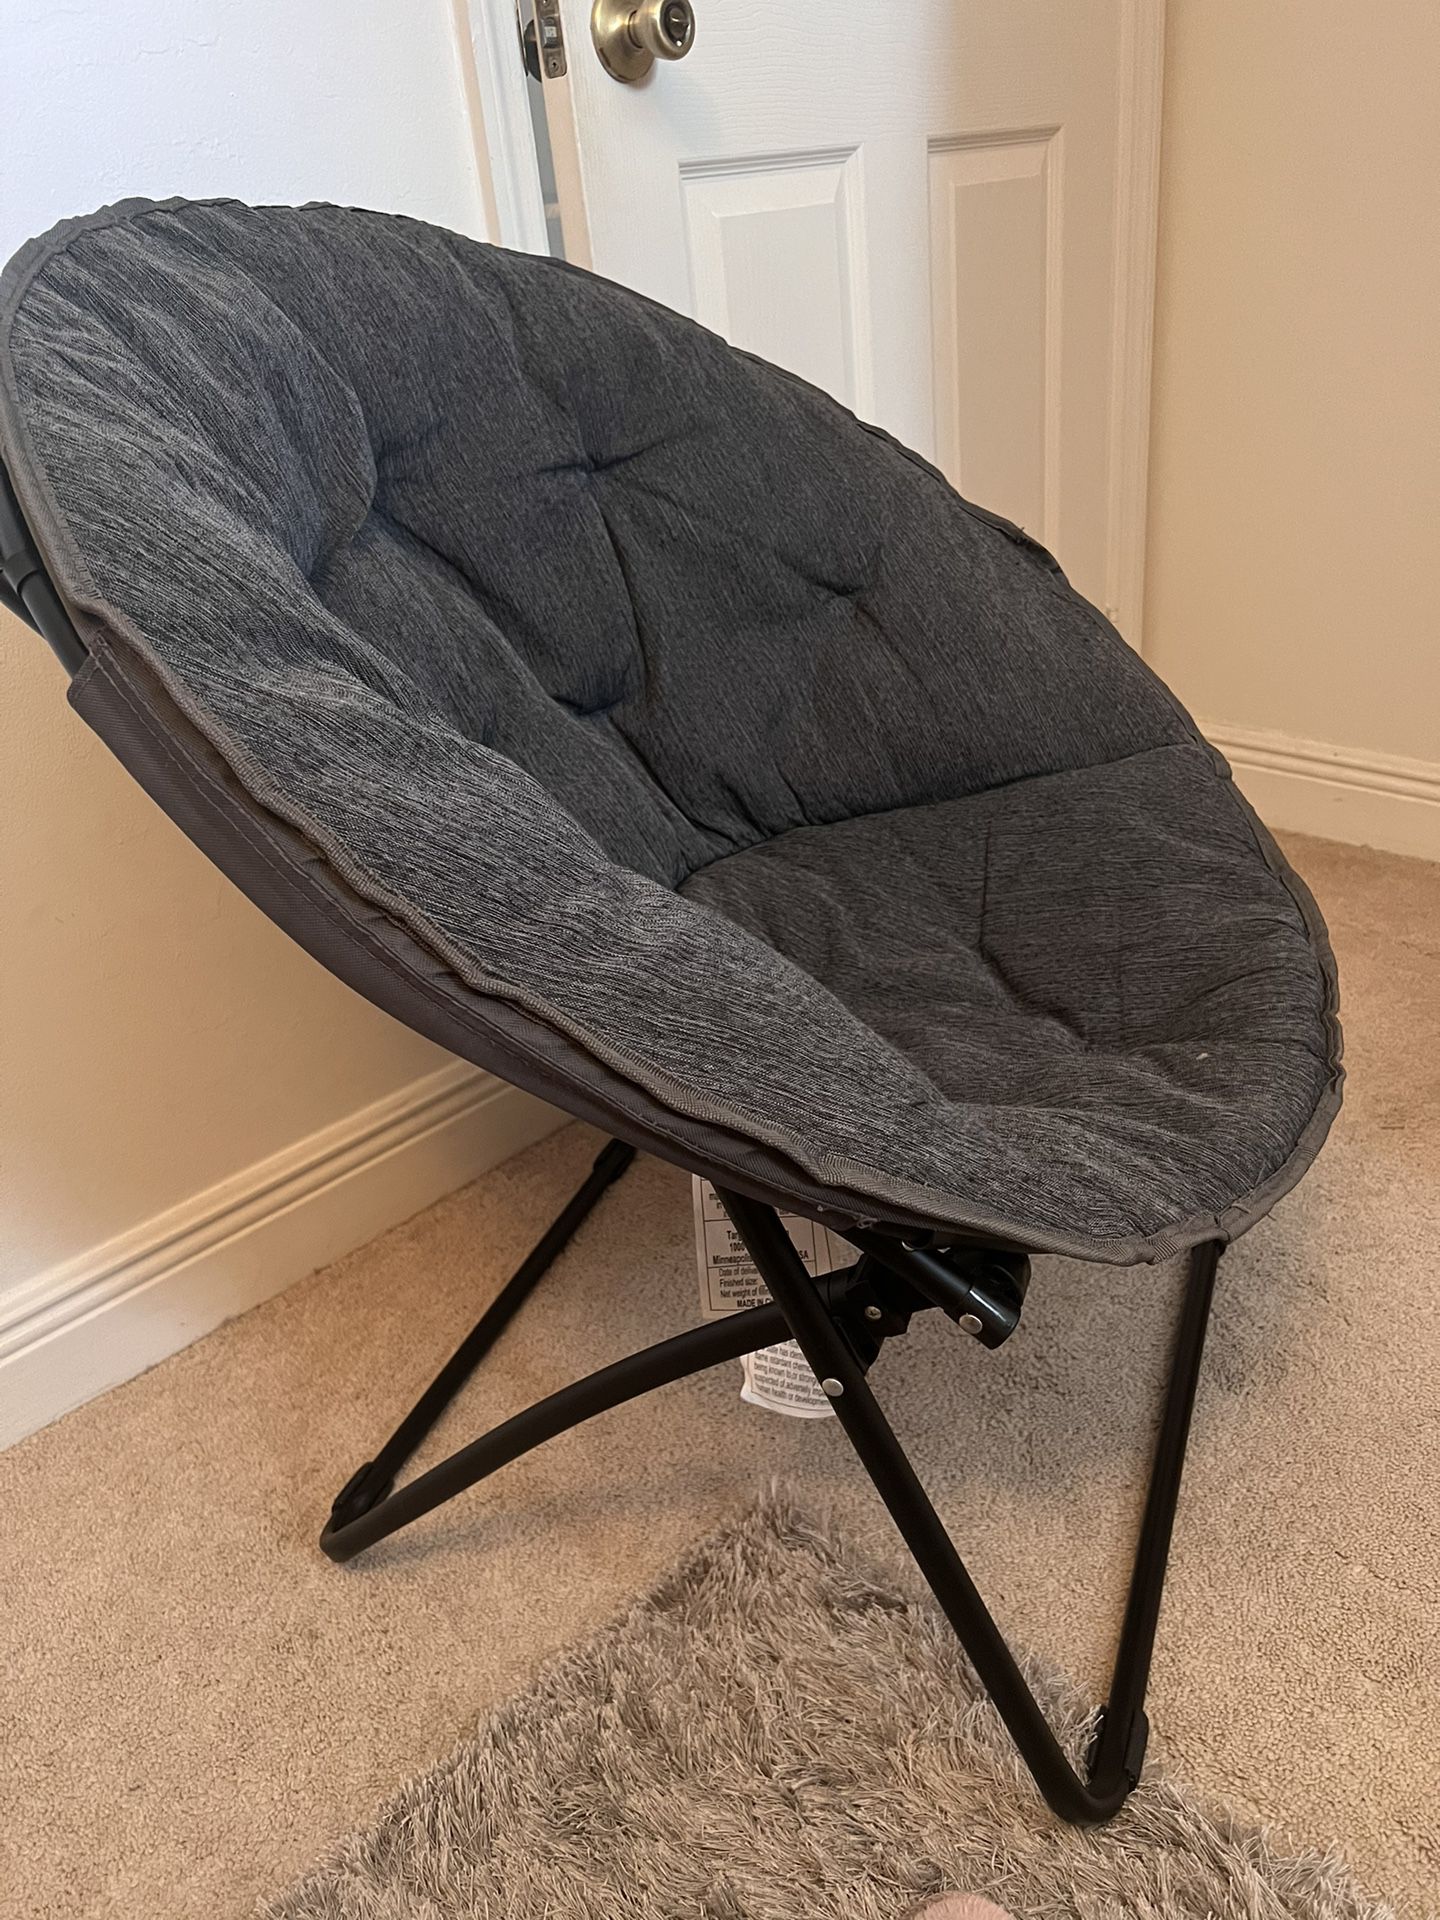 Beanie Chair 